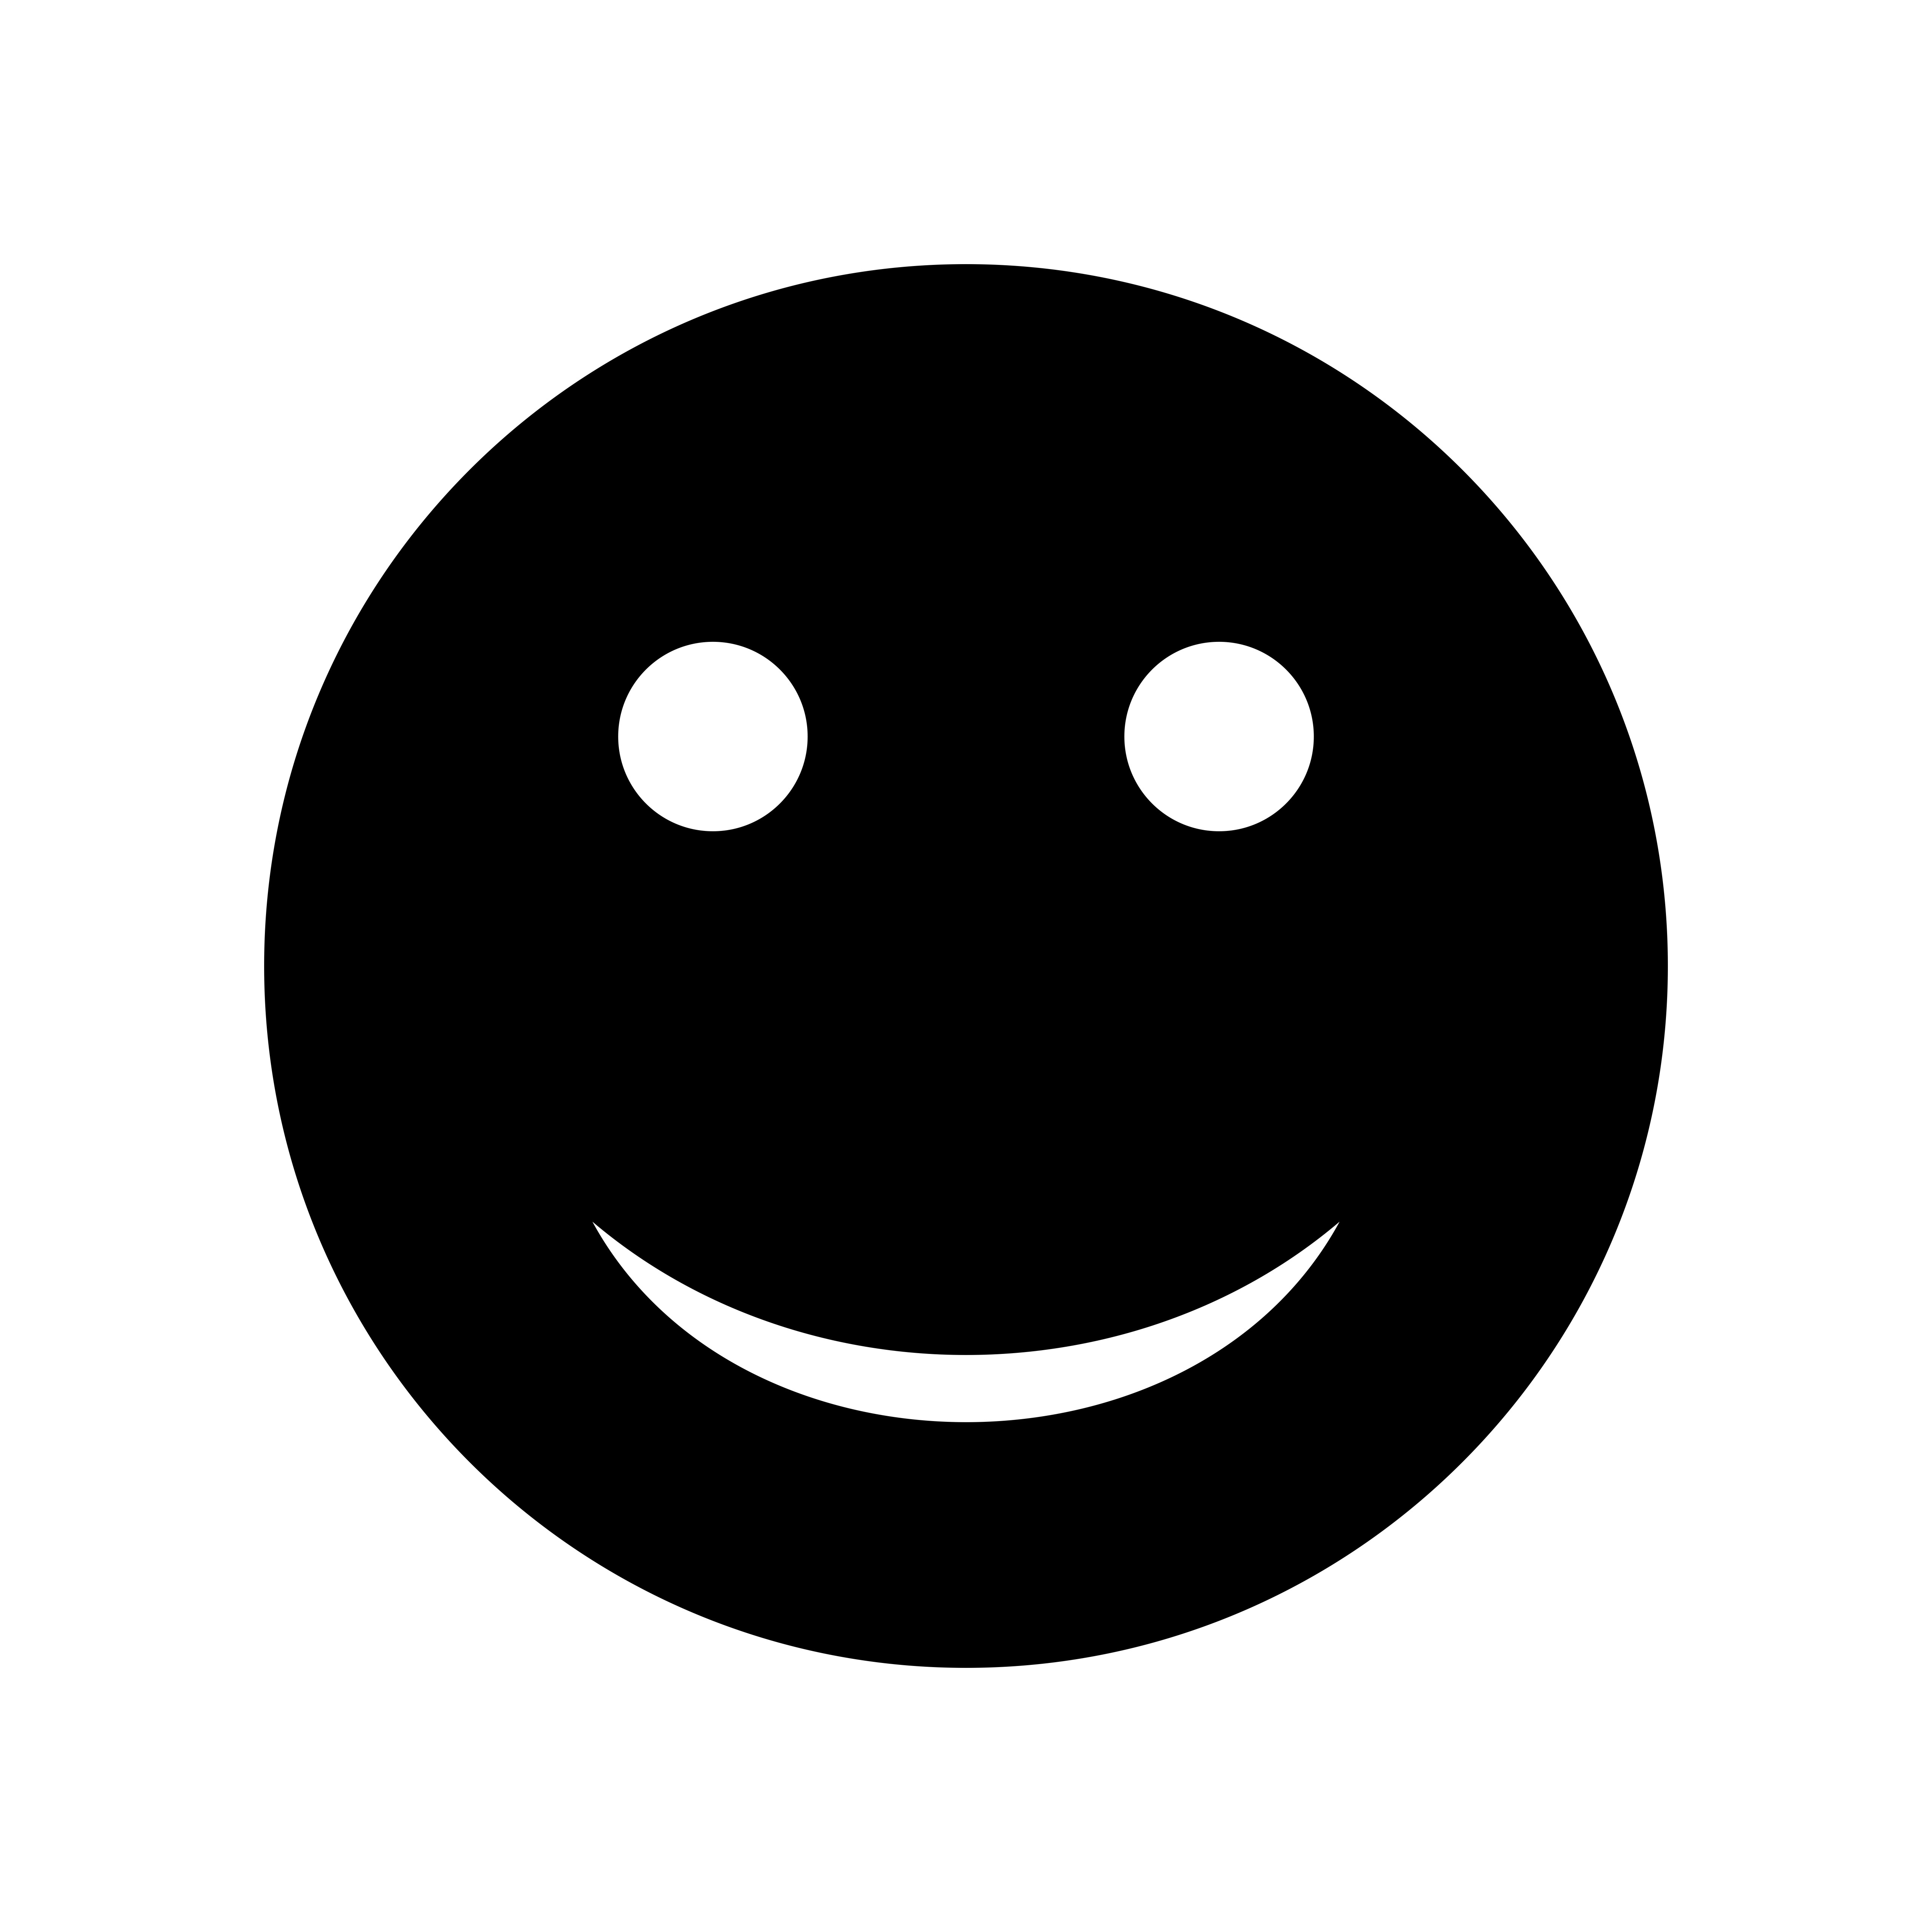 Happy Emoji Vector Icon - Download Free Vectors, Clipart Graphics & Vector Art